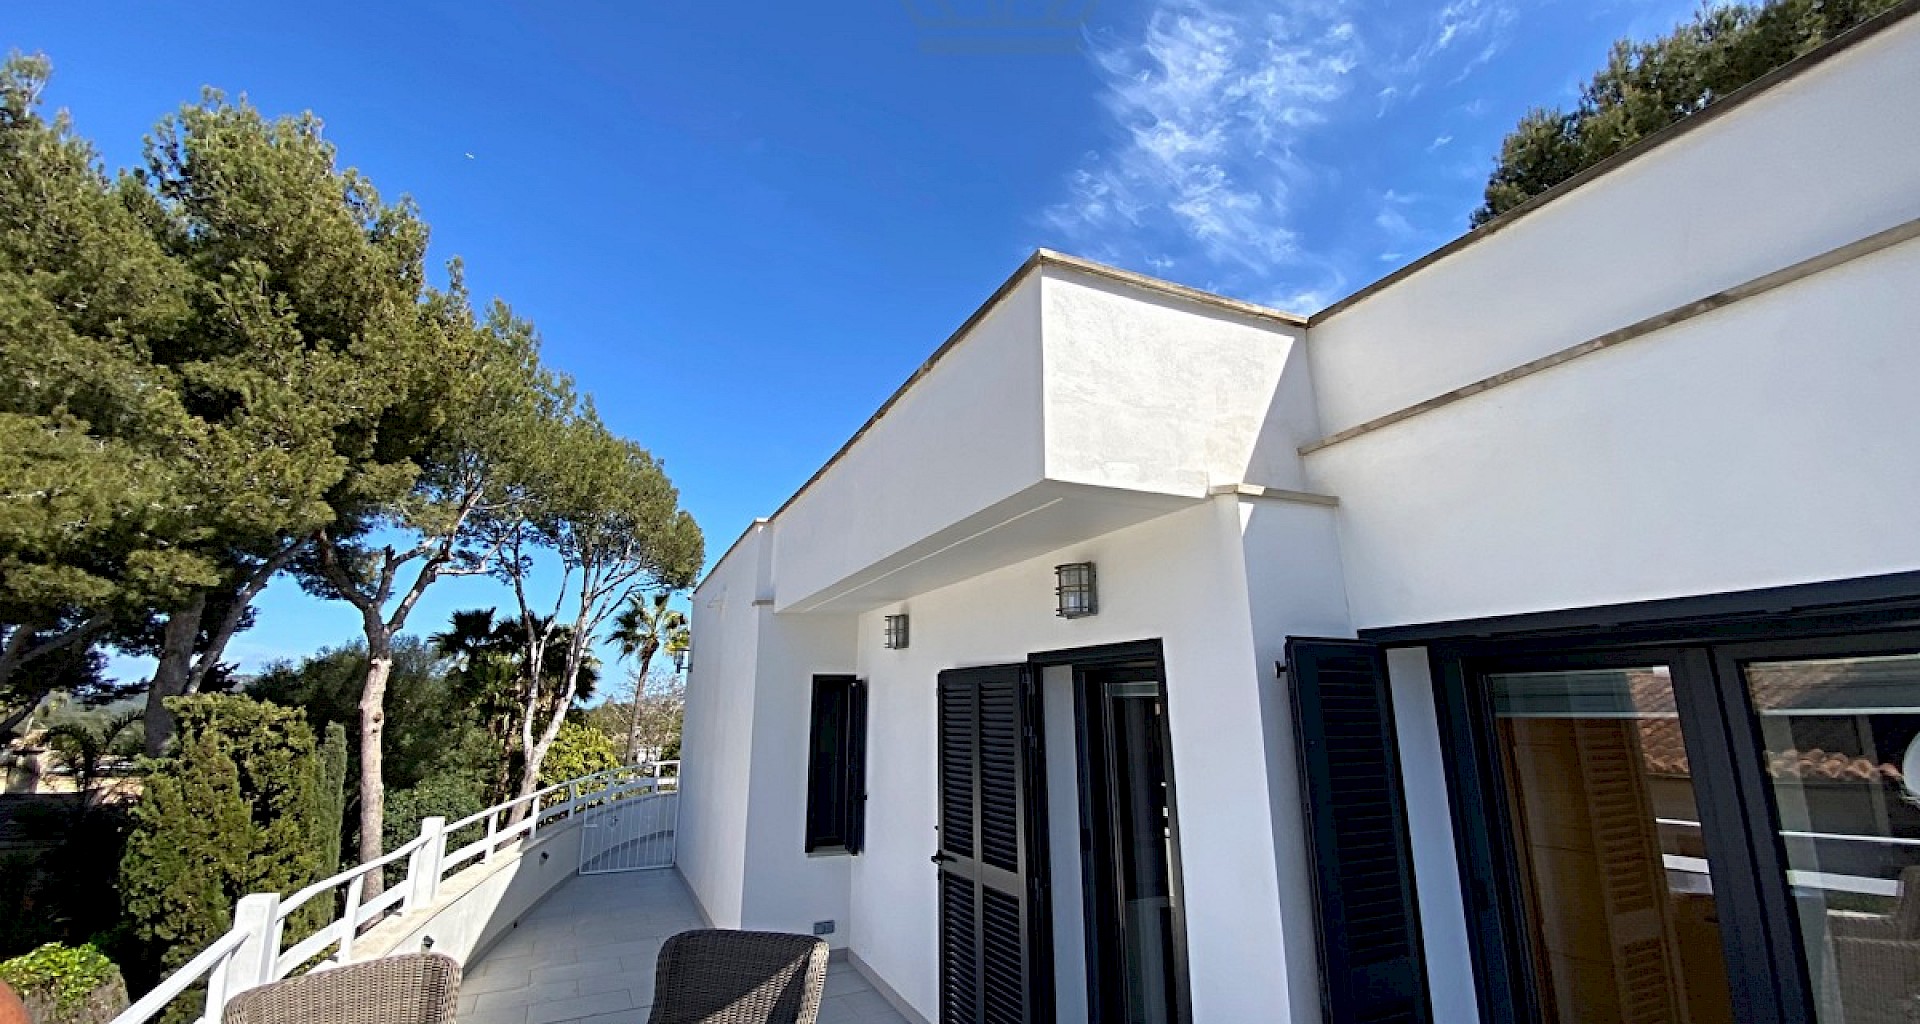 KROHN & LUEDEMANN Villa familiar en Santa Ponsa con piscina y jardín en venta 